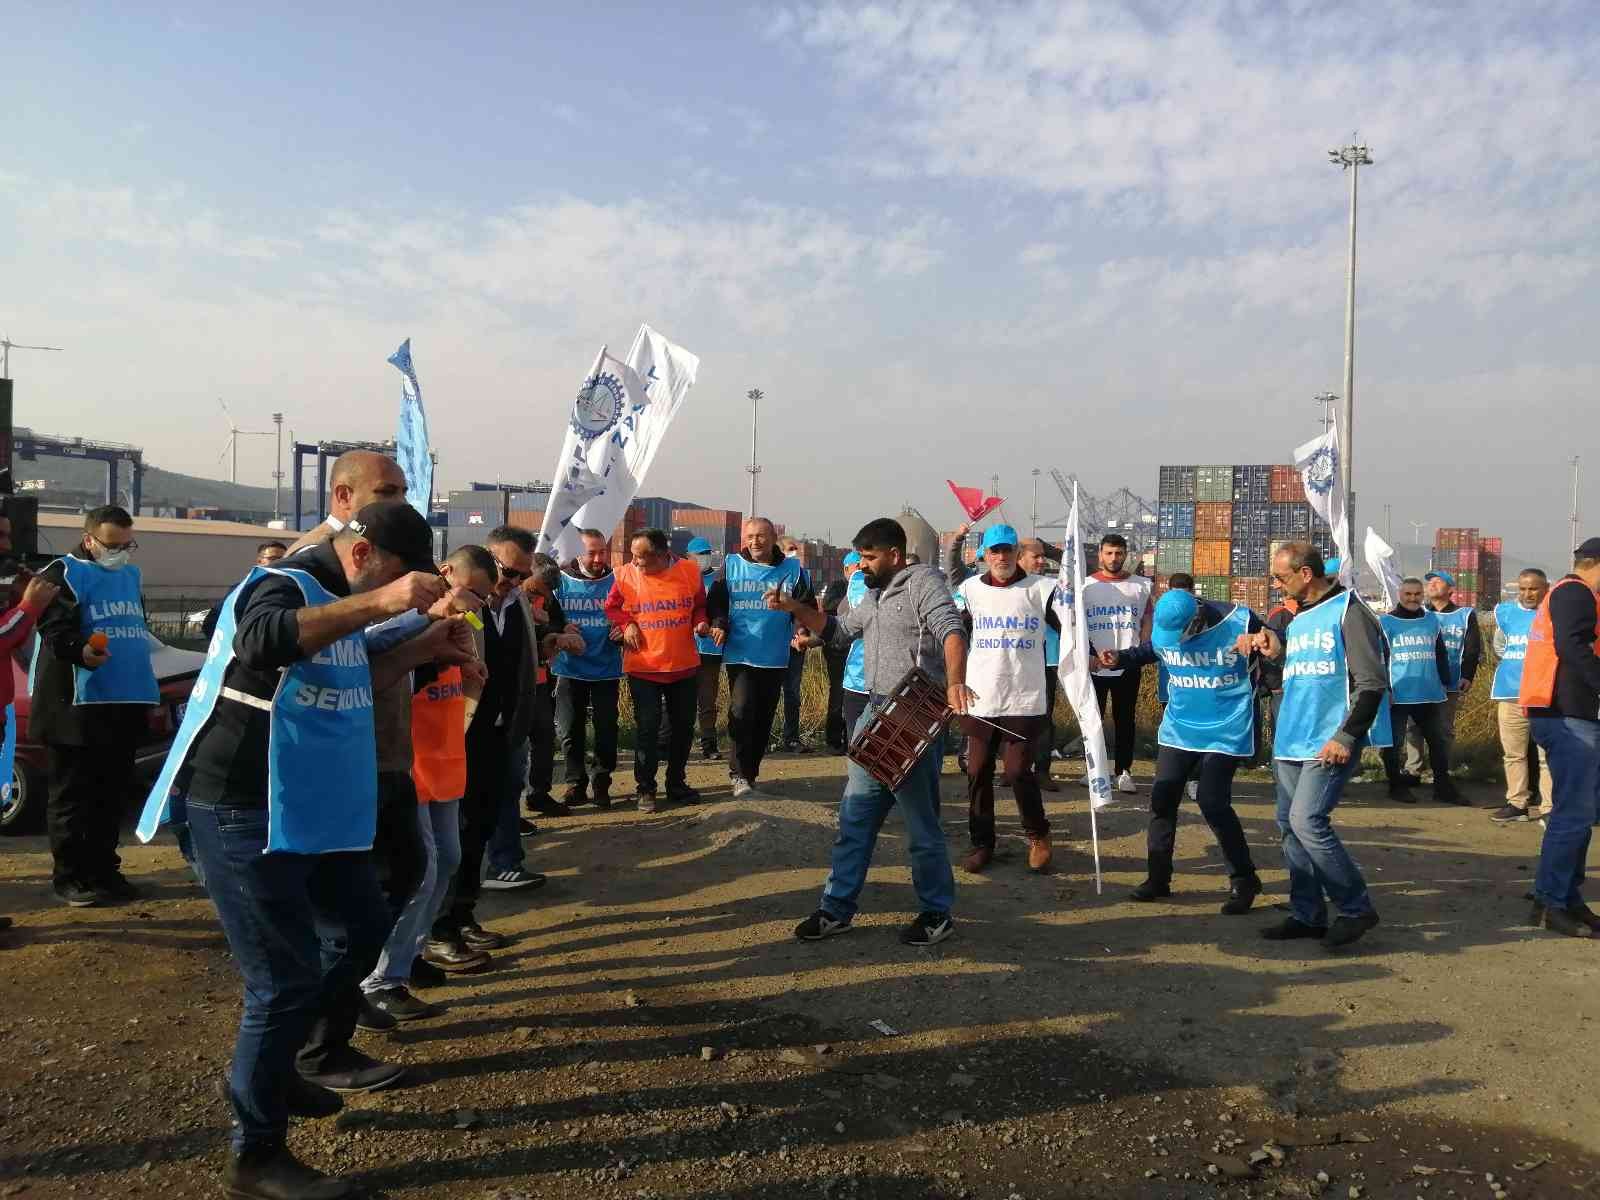 İzmir’de işten çıkarılan işçiler için eylem #izmir